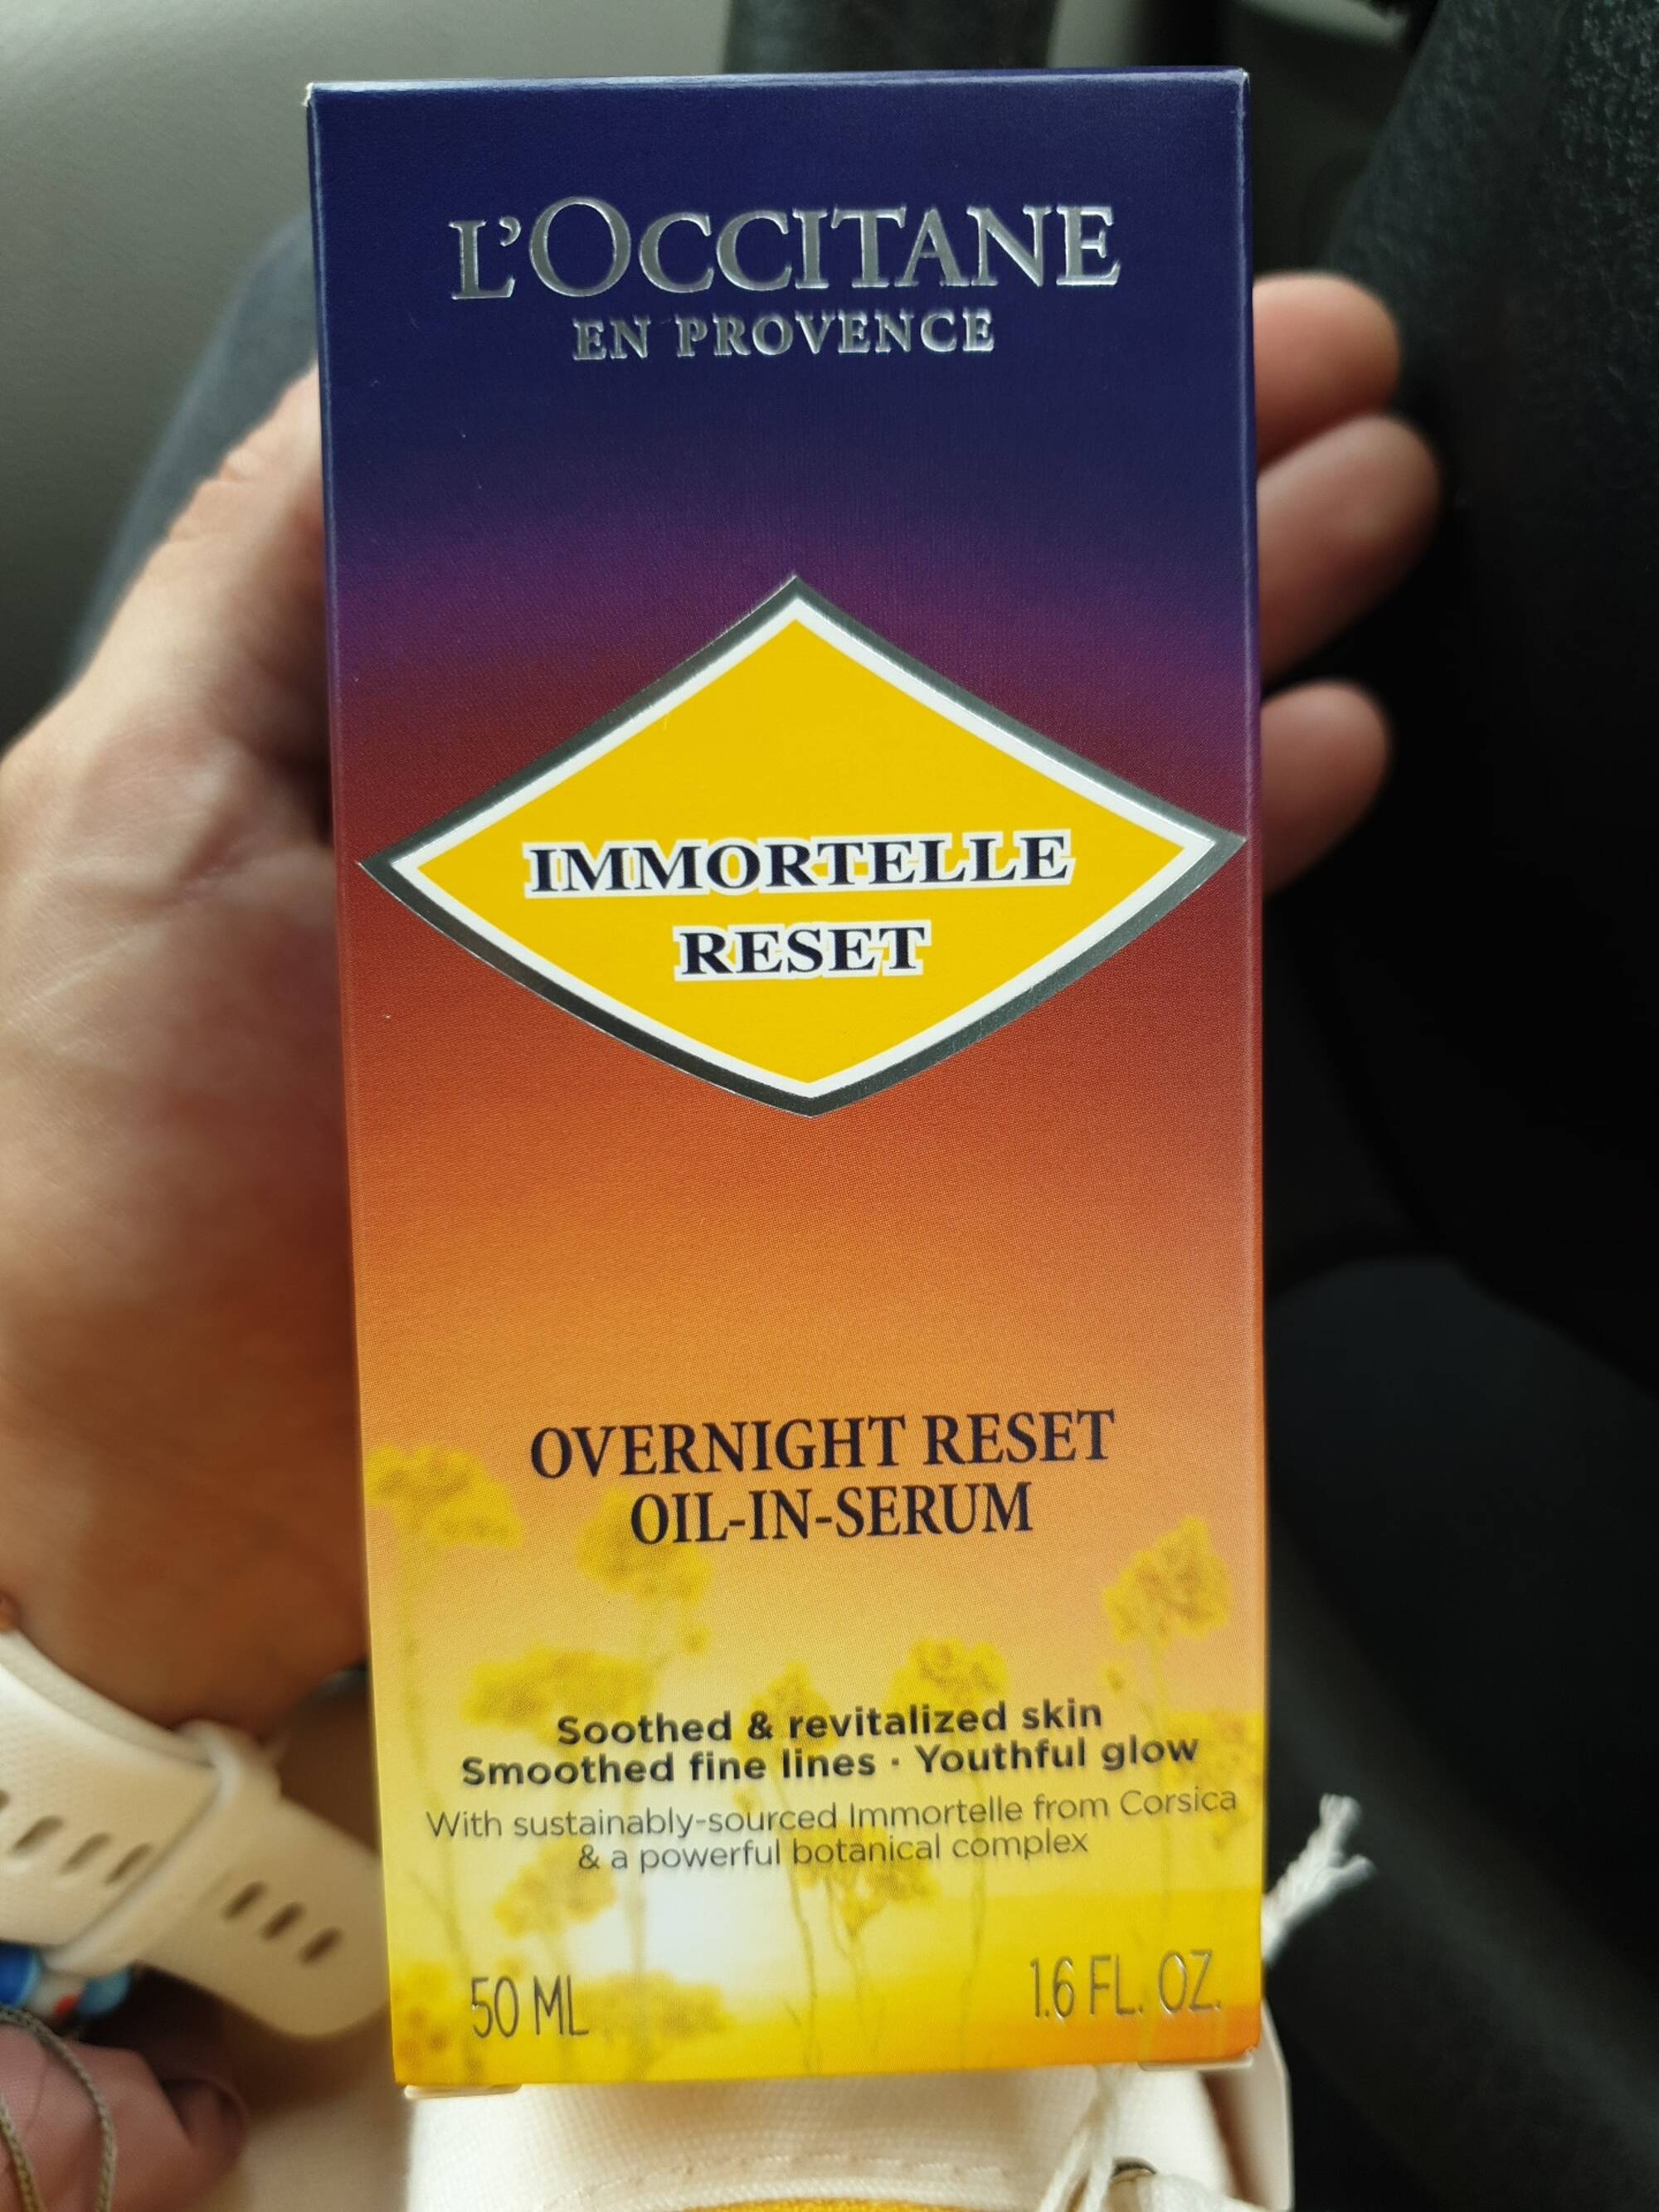 L'OCCITANE EN PROVENCE - Immortelle Reset - Overnight reset oil in serum